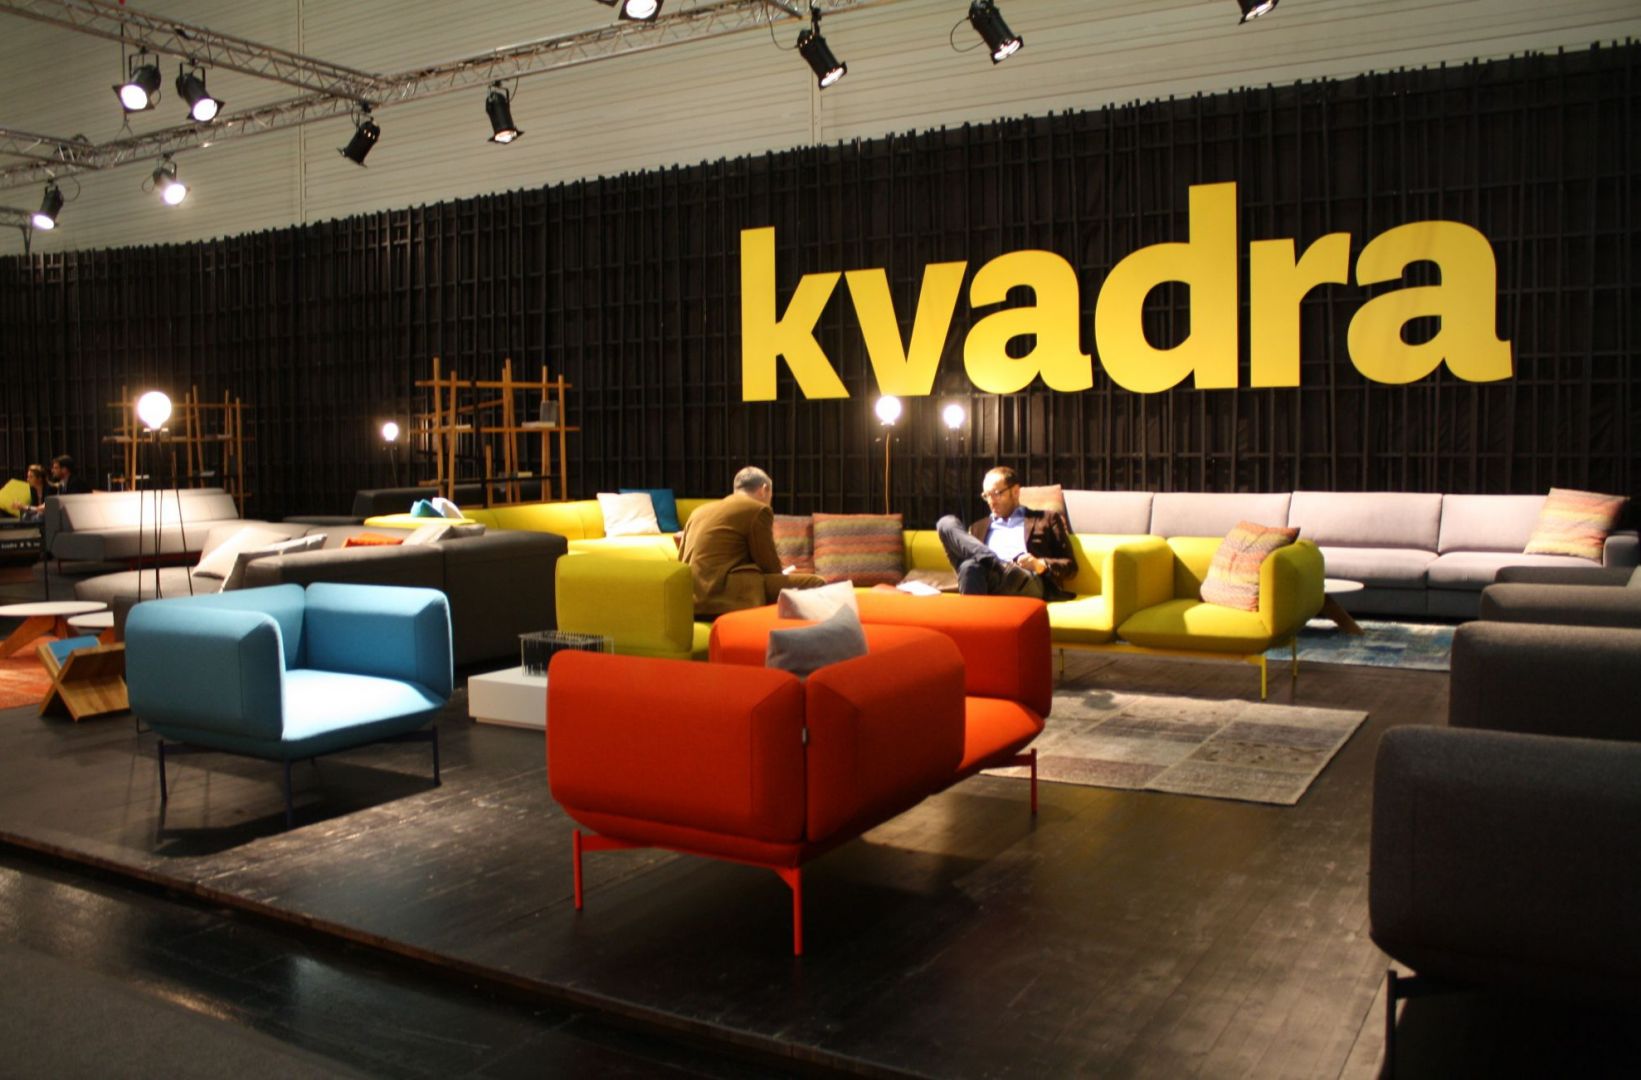 Kolekcja firmy Kvadra prezentowana podczas targów  w Kolonii. Fot. Katarzyna Hryniewicka